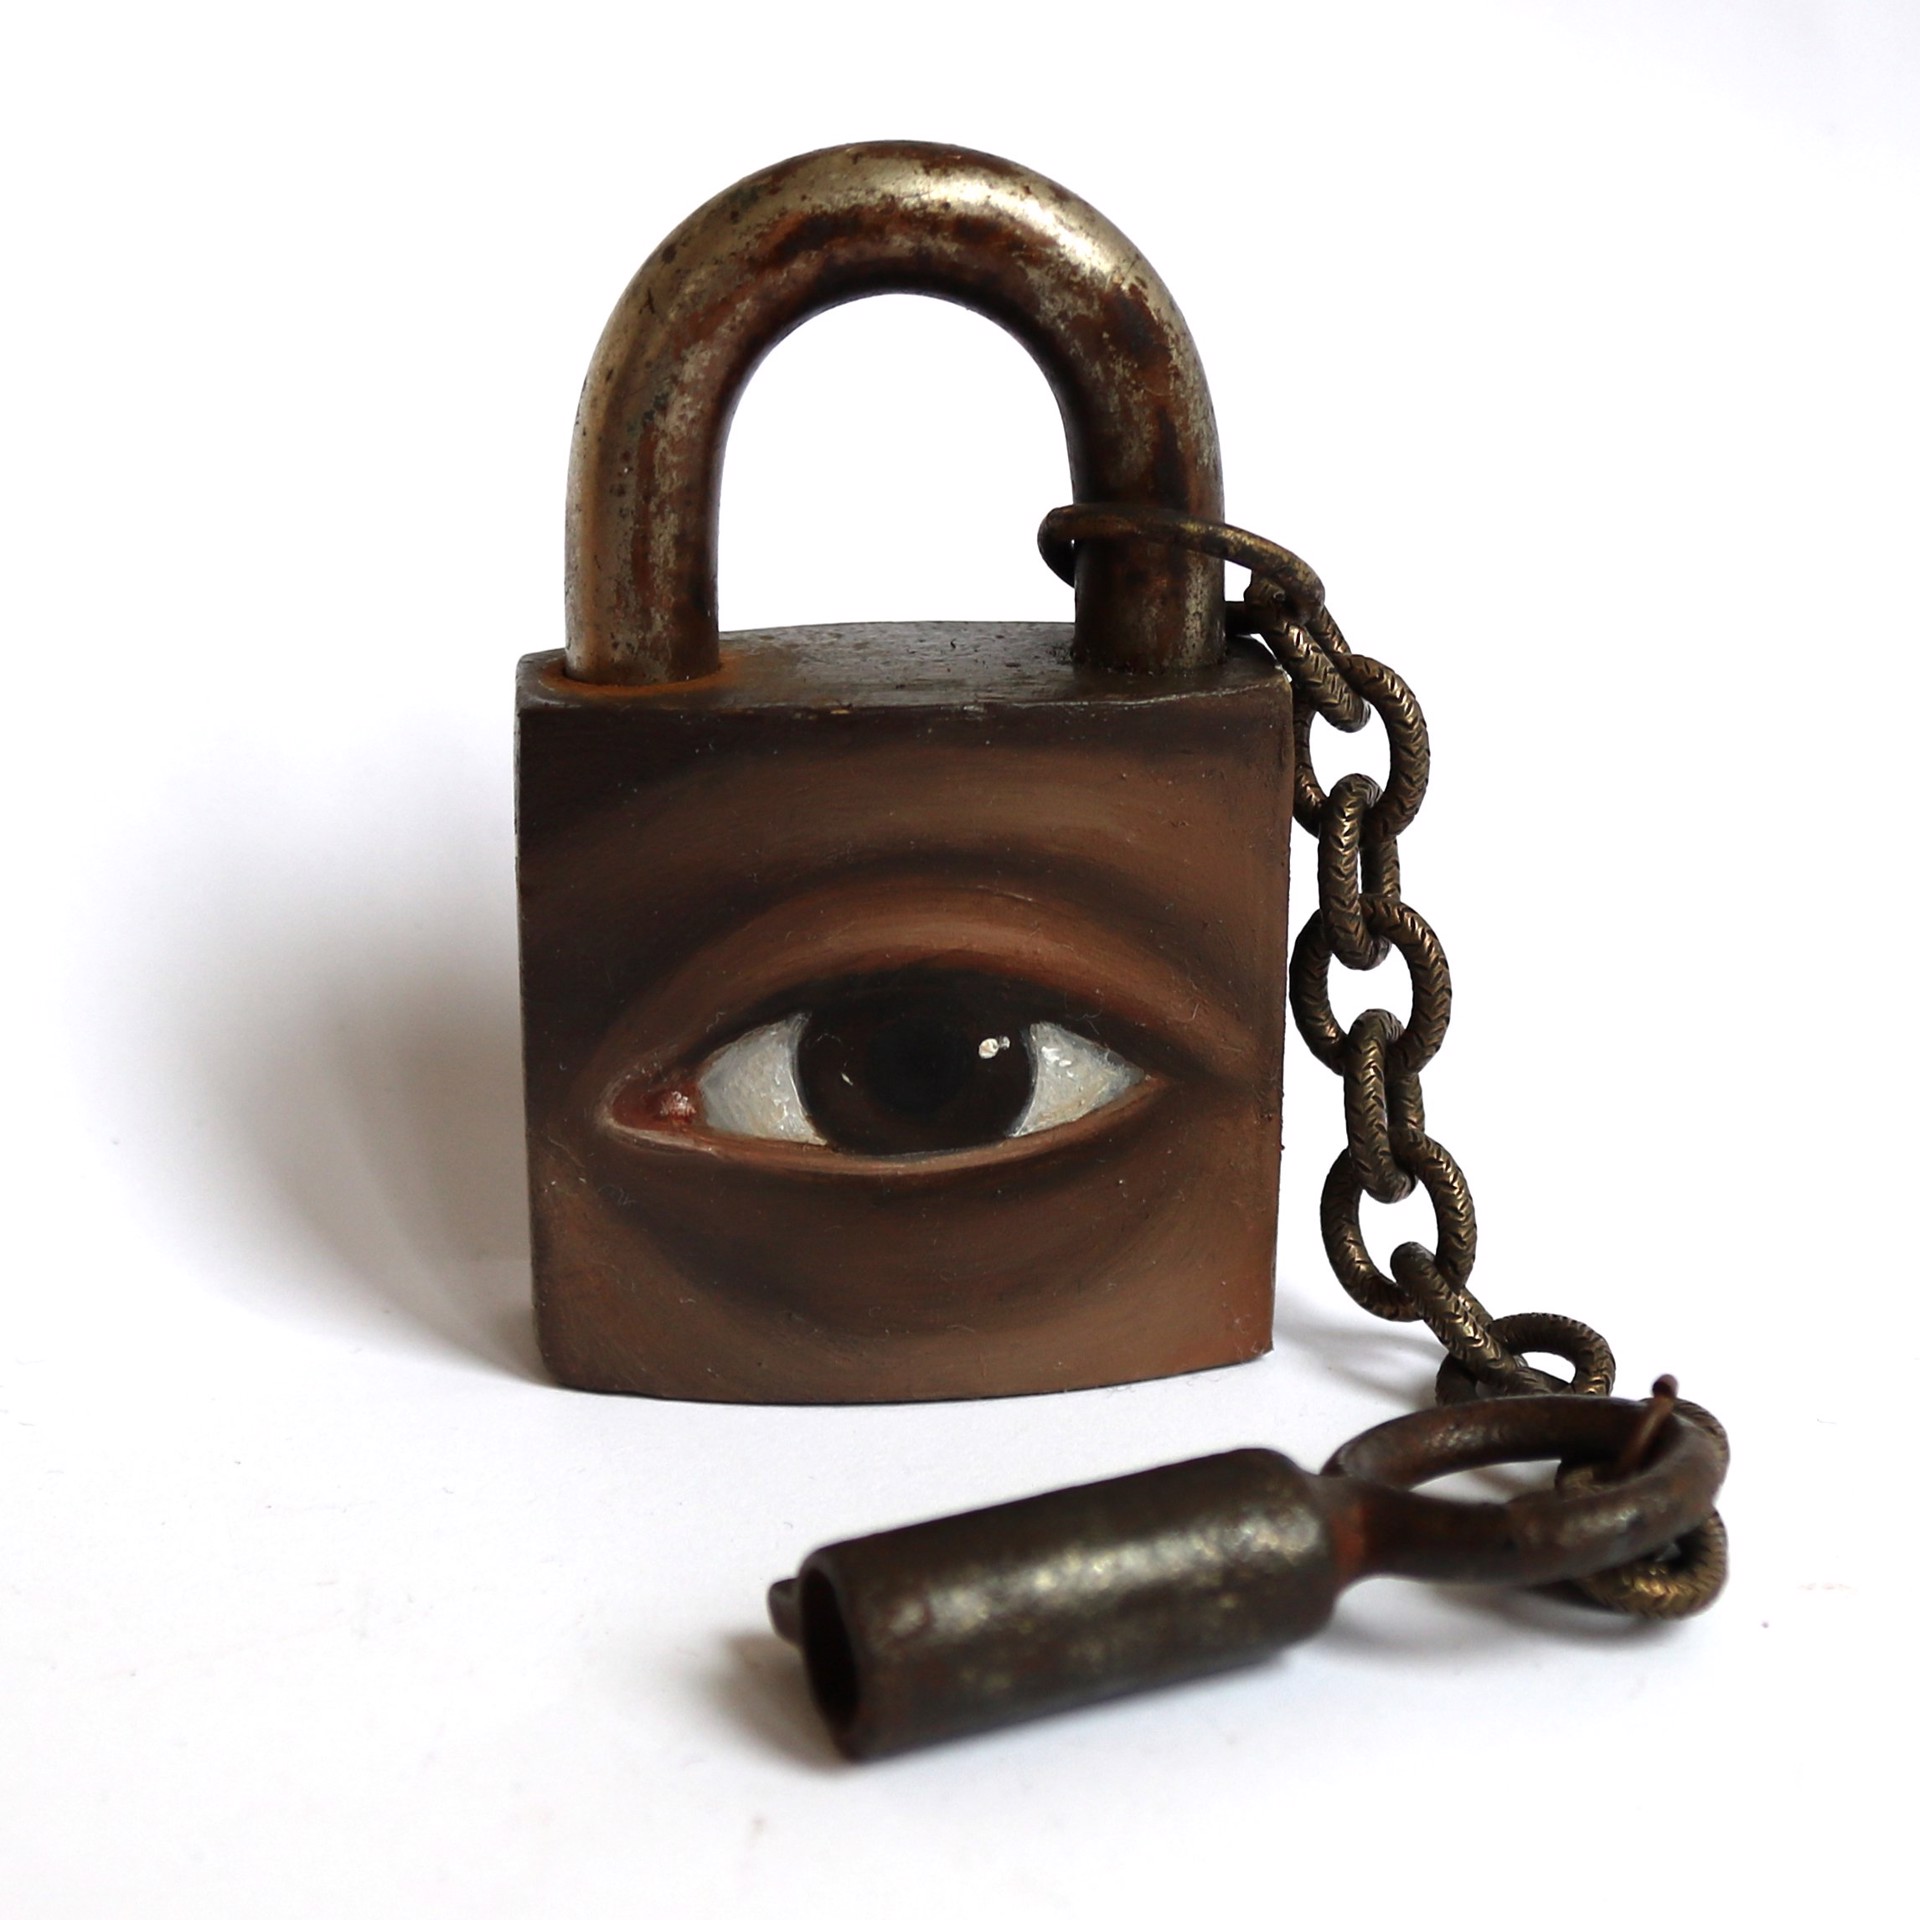 Lock and Key #24 by Alexandra Dillon